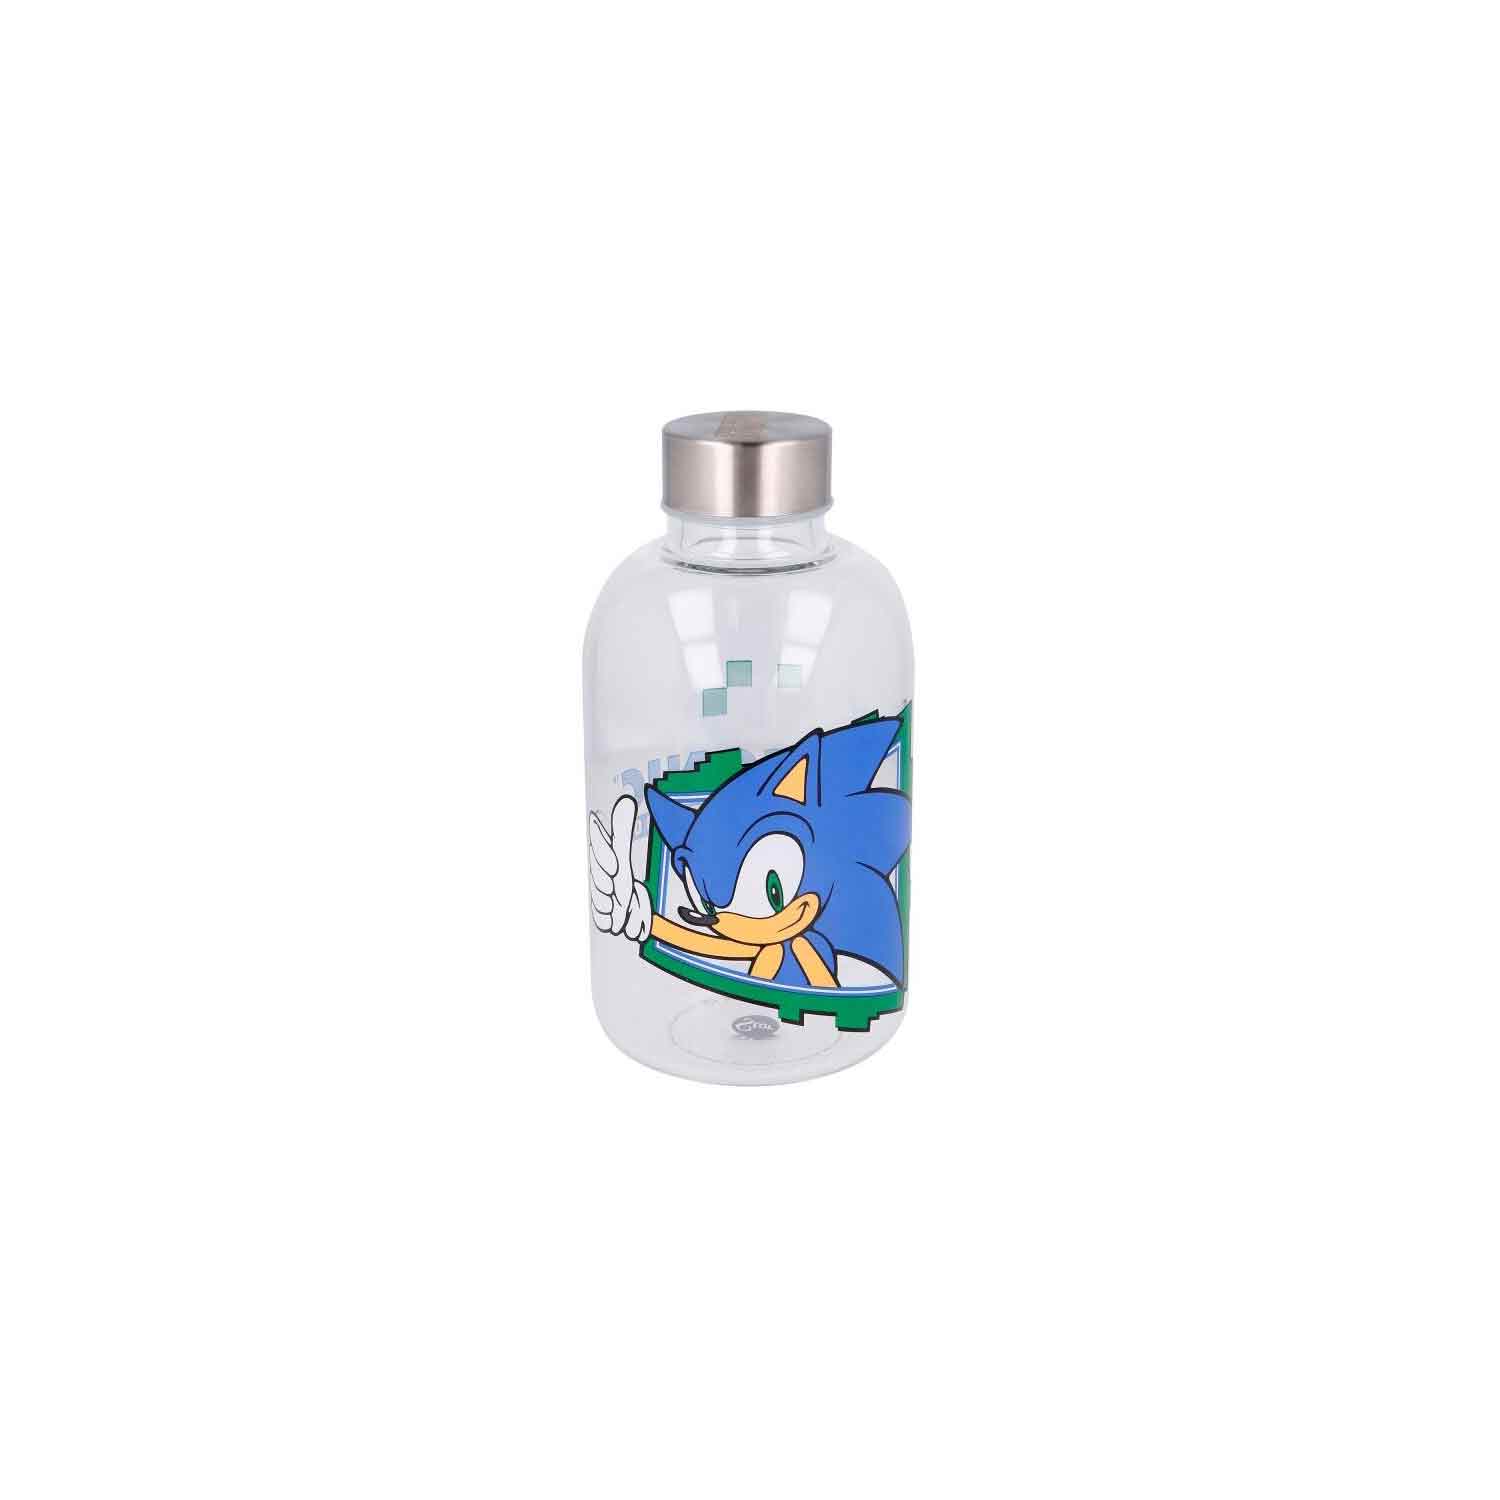 sonic-the-hedgehog-glass-bottle-620ml